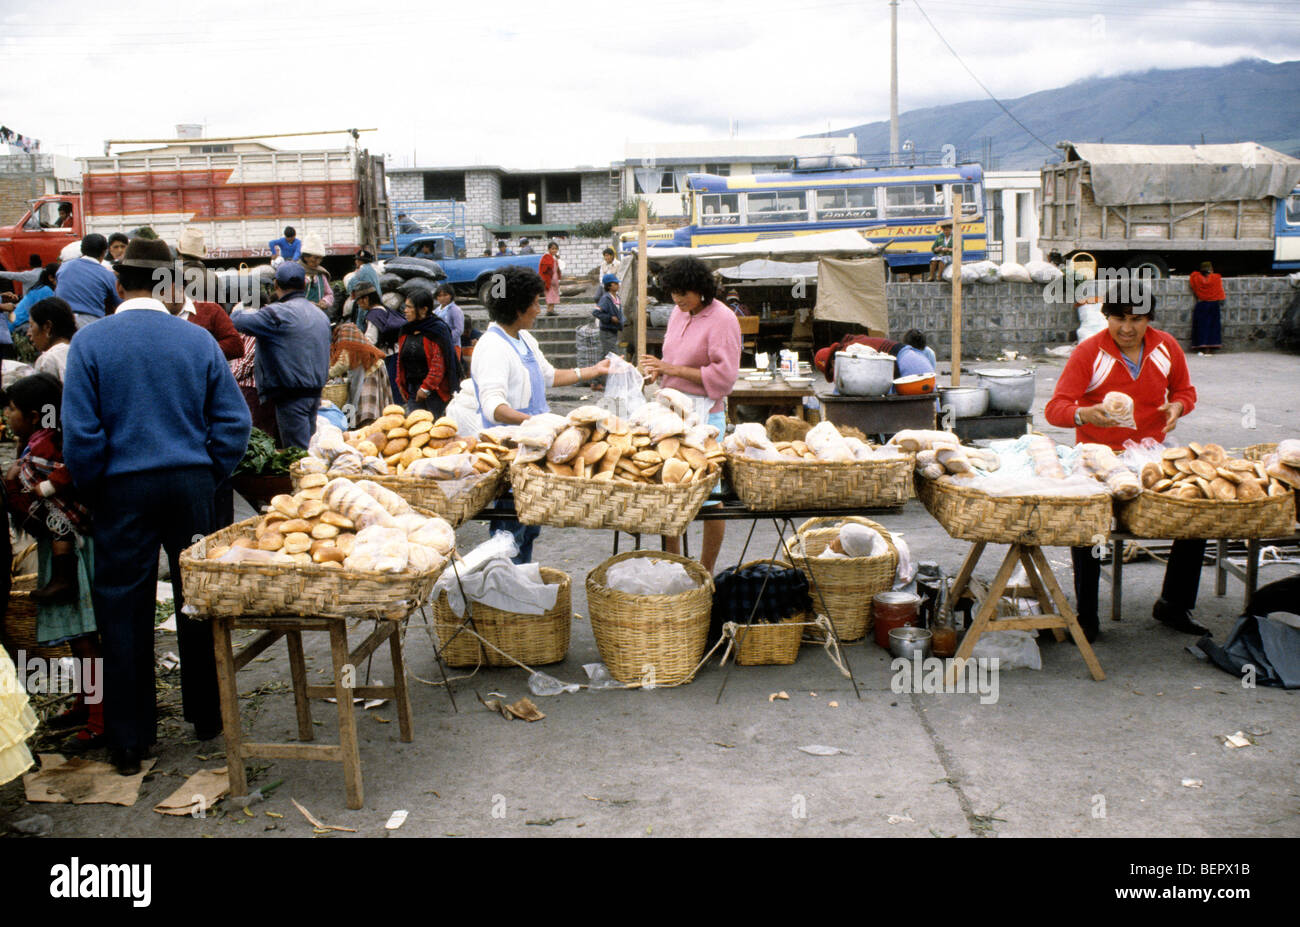 Bread seller  in local upland Ecuador market. Stock Photo